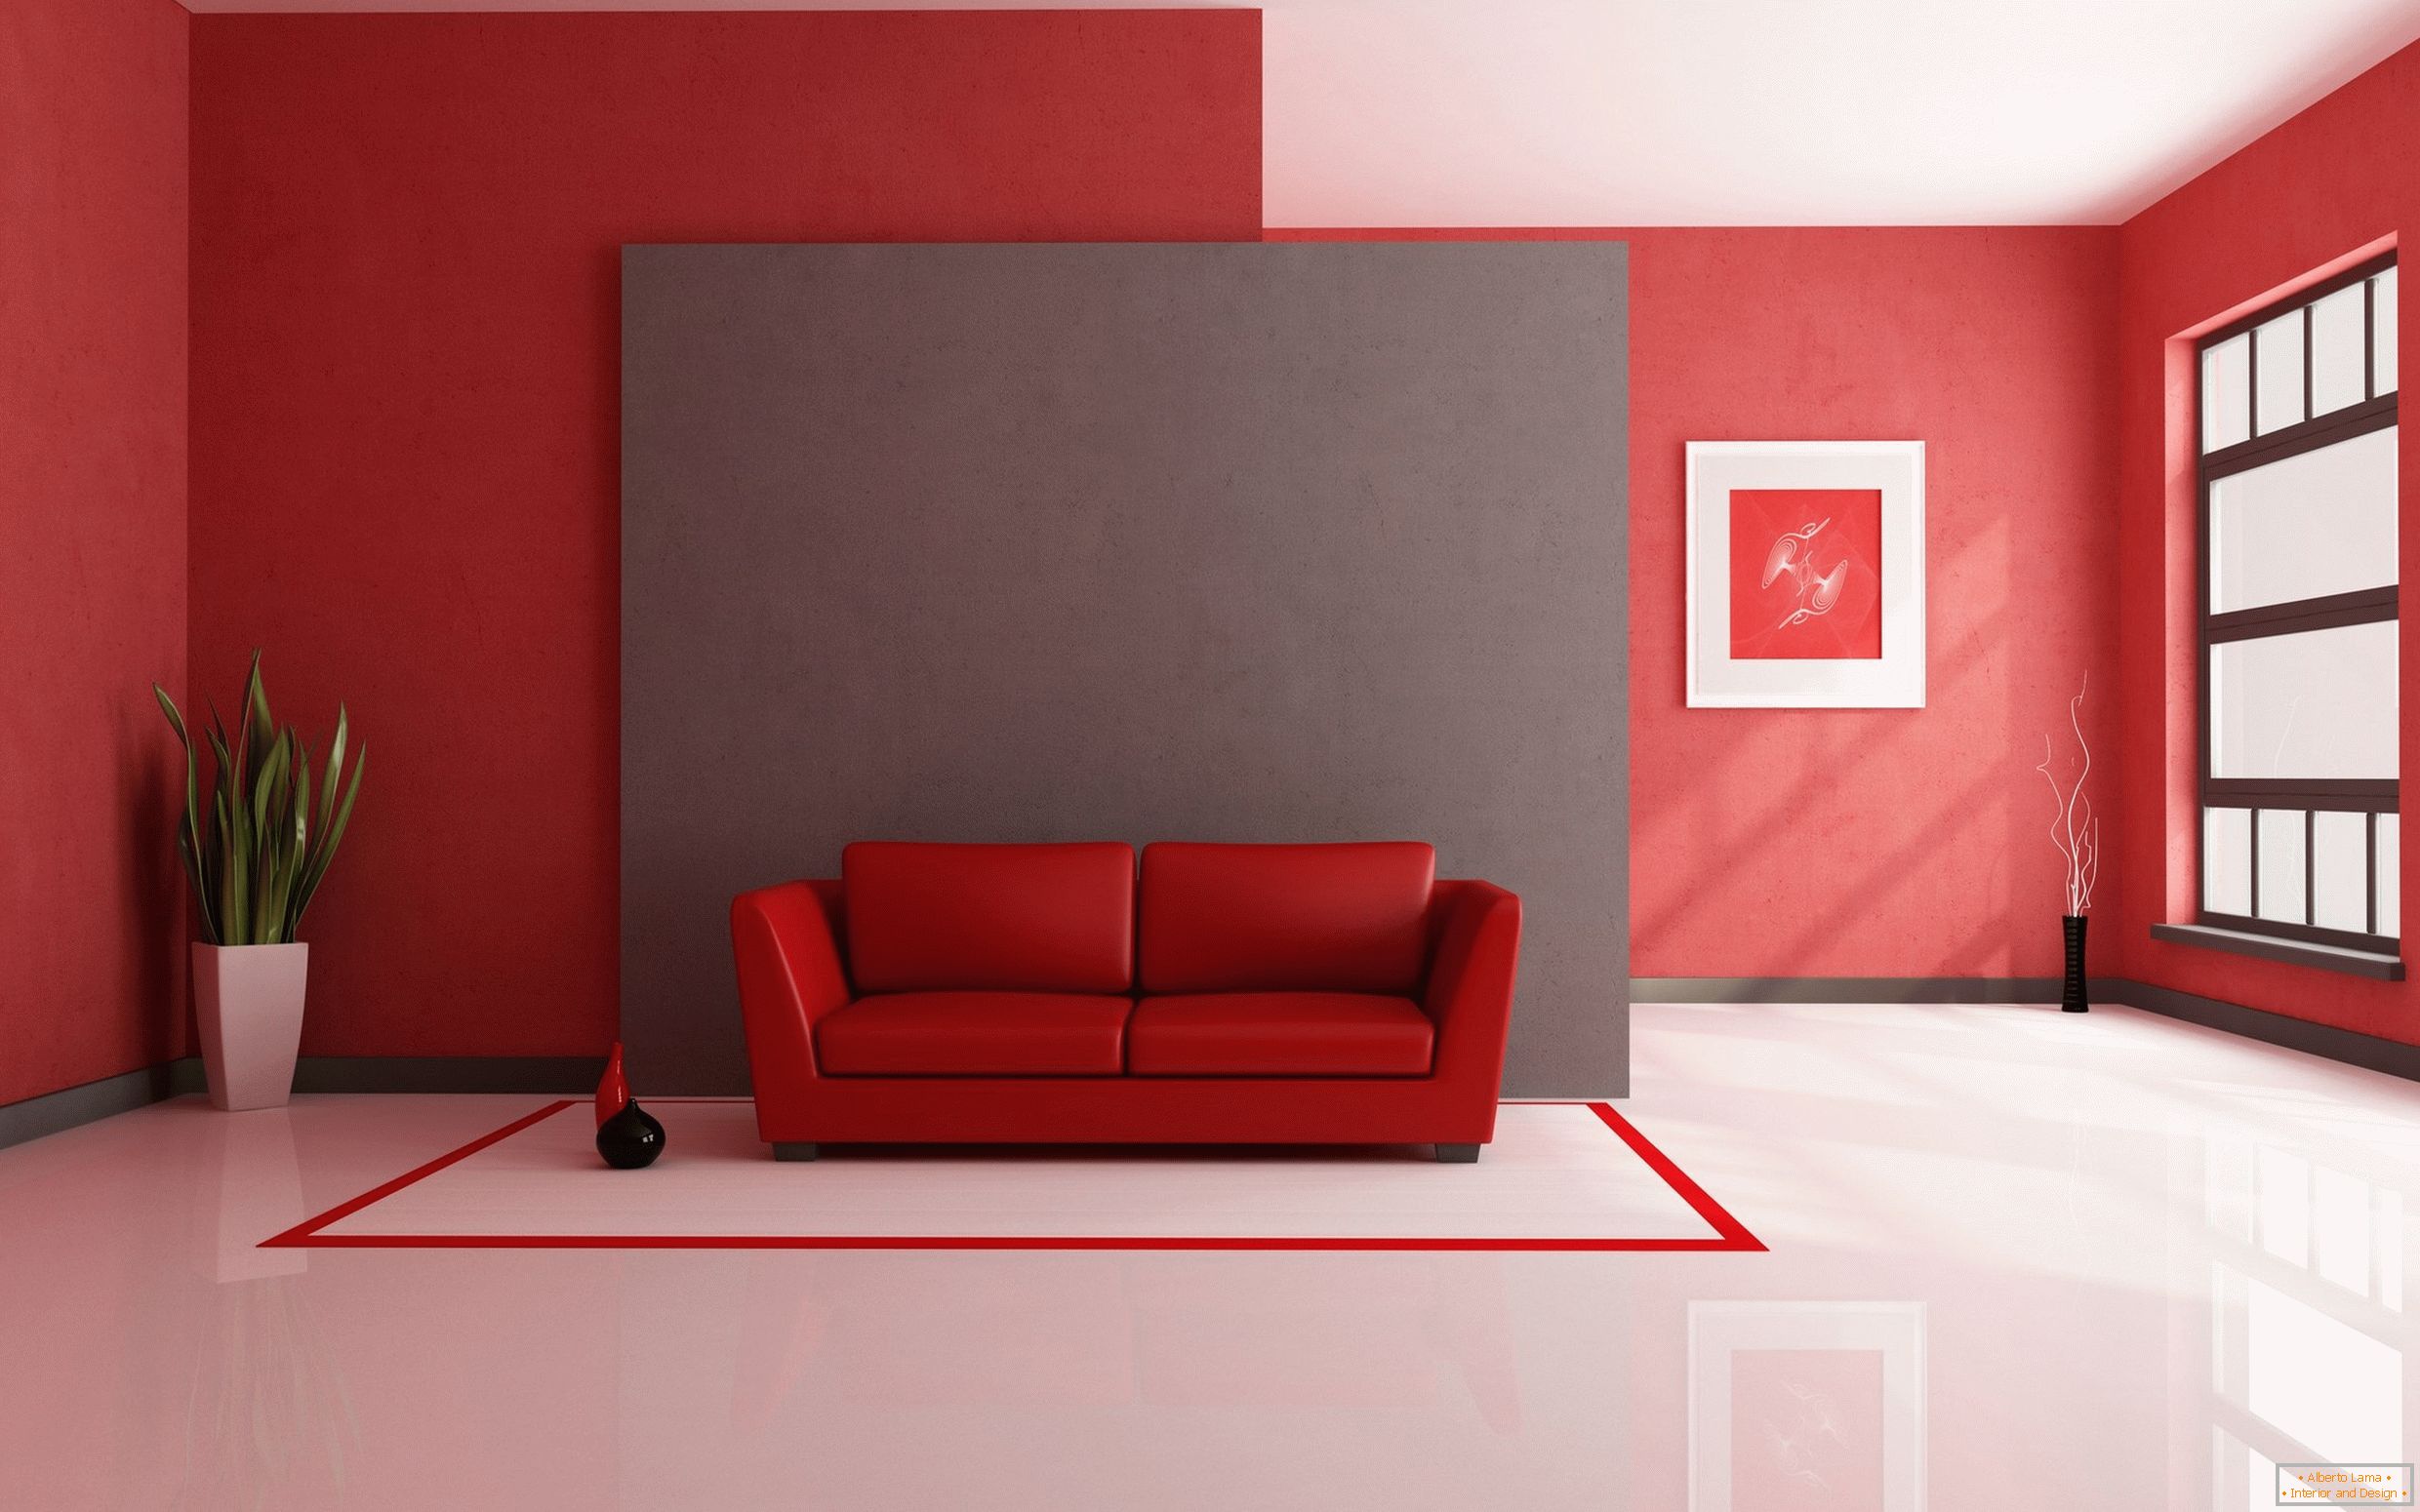 Biała podłoga w połączeniu z czerwonymi materiałami wykończeniowymi i elementami wyposażenia wnętrz